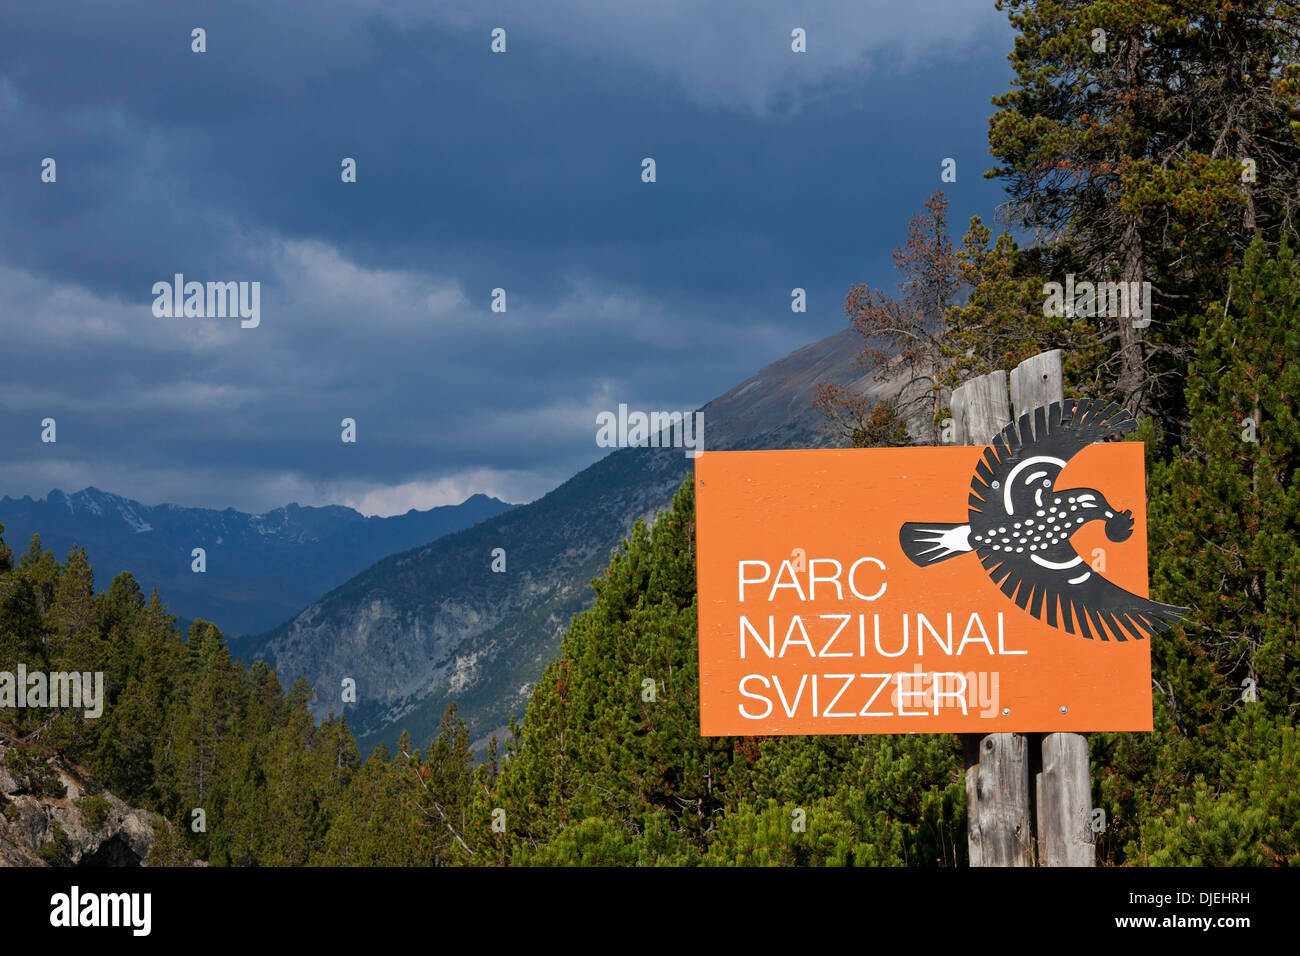 Logo montrant signe avec Casse-noisette du Parc National Suisse à Graubünden / Grisons dans les Alpes, Suisse Banque D'Images